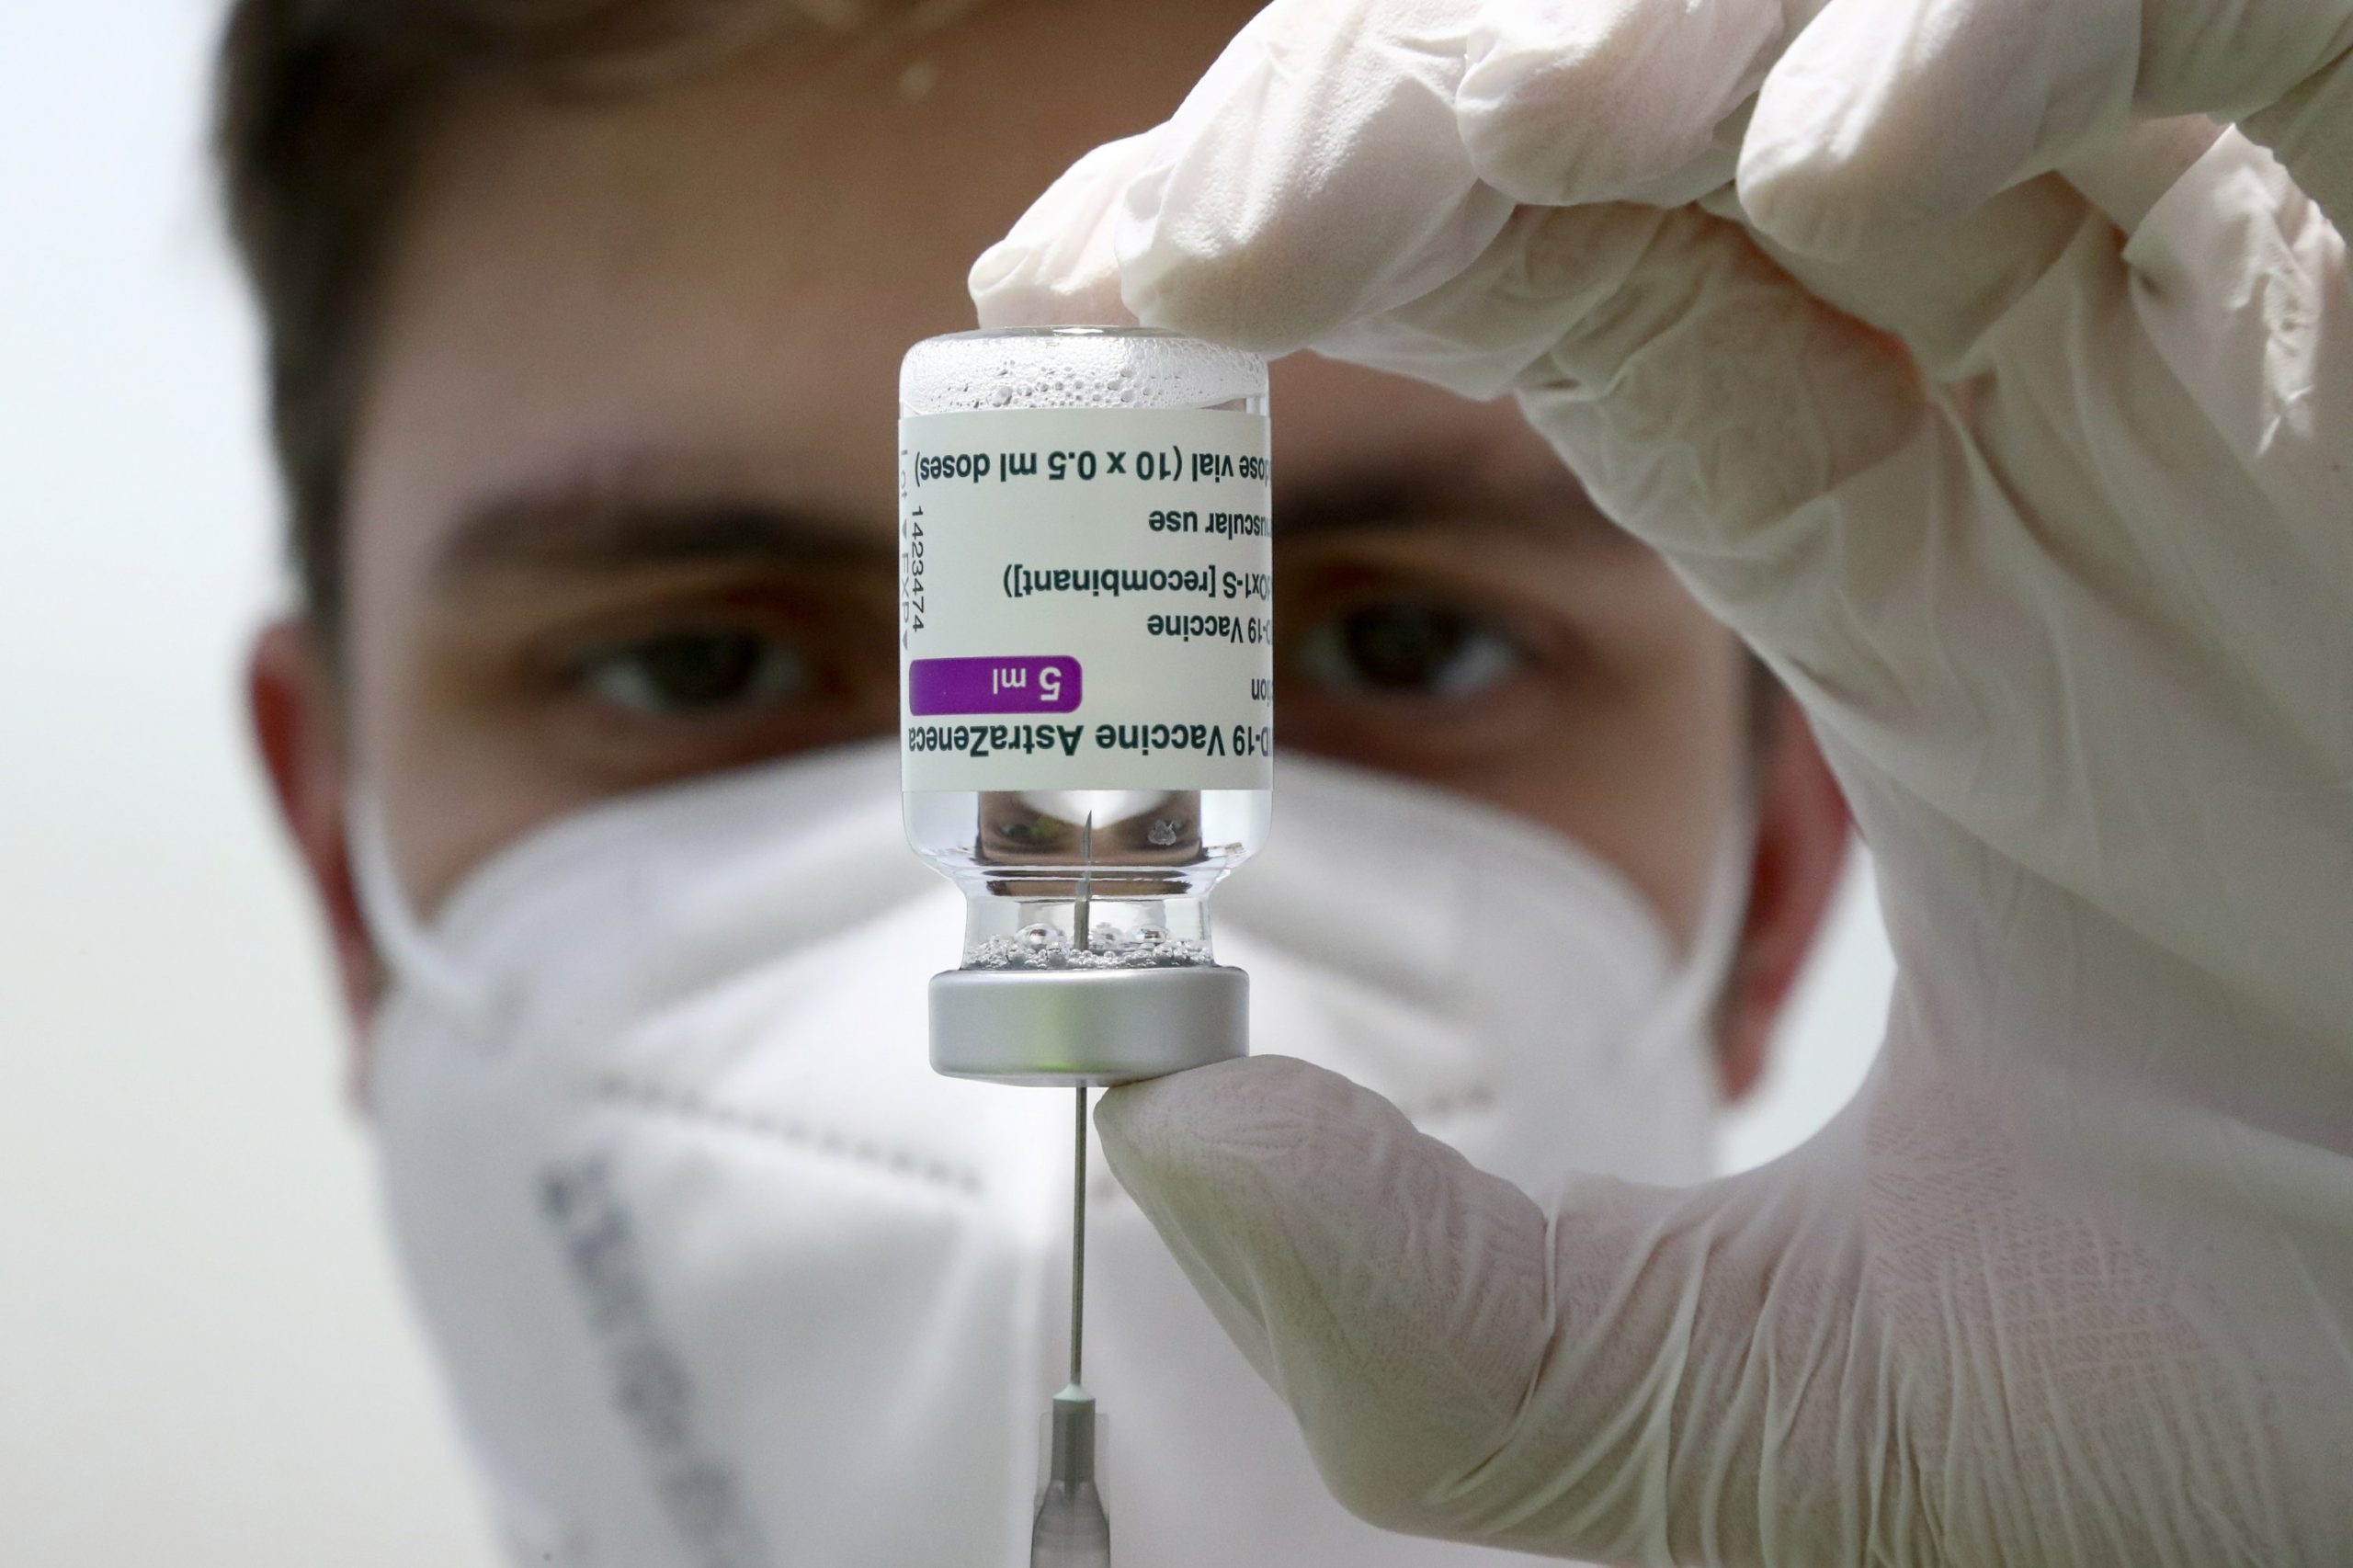 Σύρος: «Εγκεφαλικό από θρόμβους» έπαθε άντρας που έκανε το εμβόλιο της AstraZeneca – Κατέρρευσε σε λίγα λεπτά!